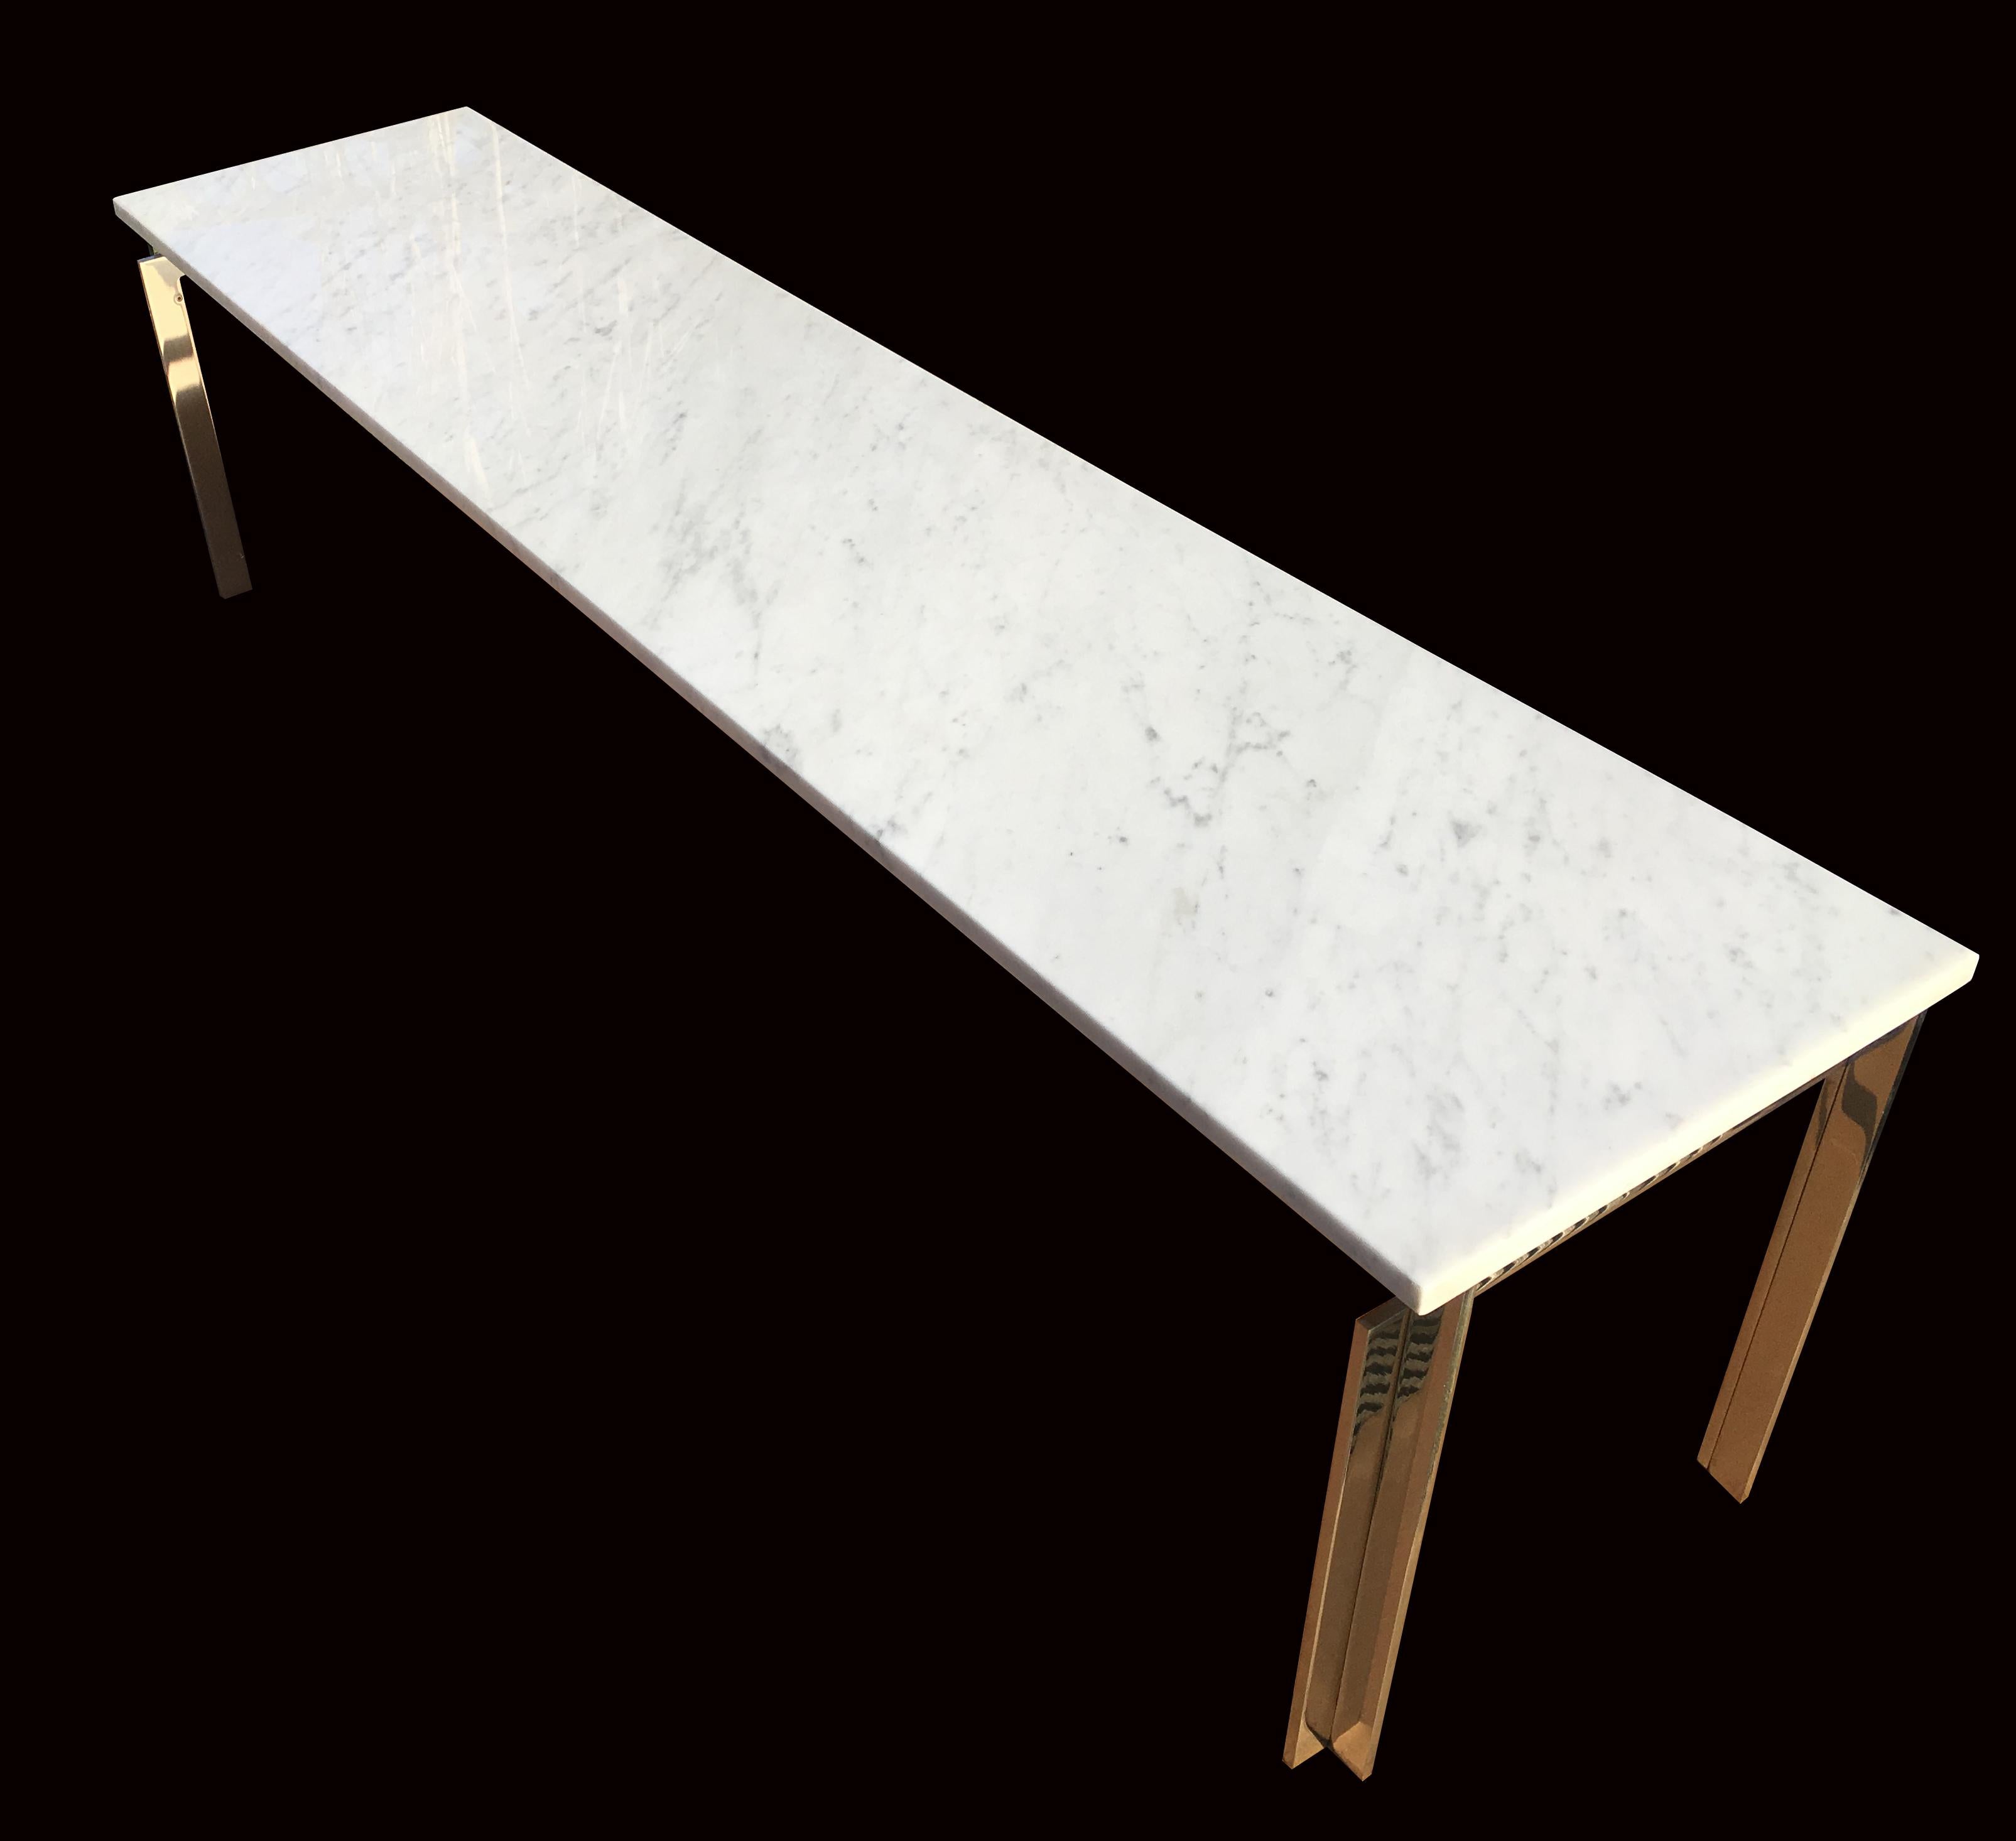 Diese Tische sind Teil unseres neuen, maßgeschneiderten Service.
Bitte beachten Sie, dass die Farbe der Metallteile hell silber ist, da sie auf einigen Fotos leicht gold aussehen!

Sie werden aus hochglanzpoliertem, massivem Edelstahl